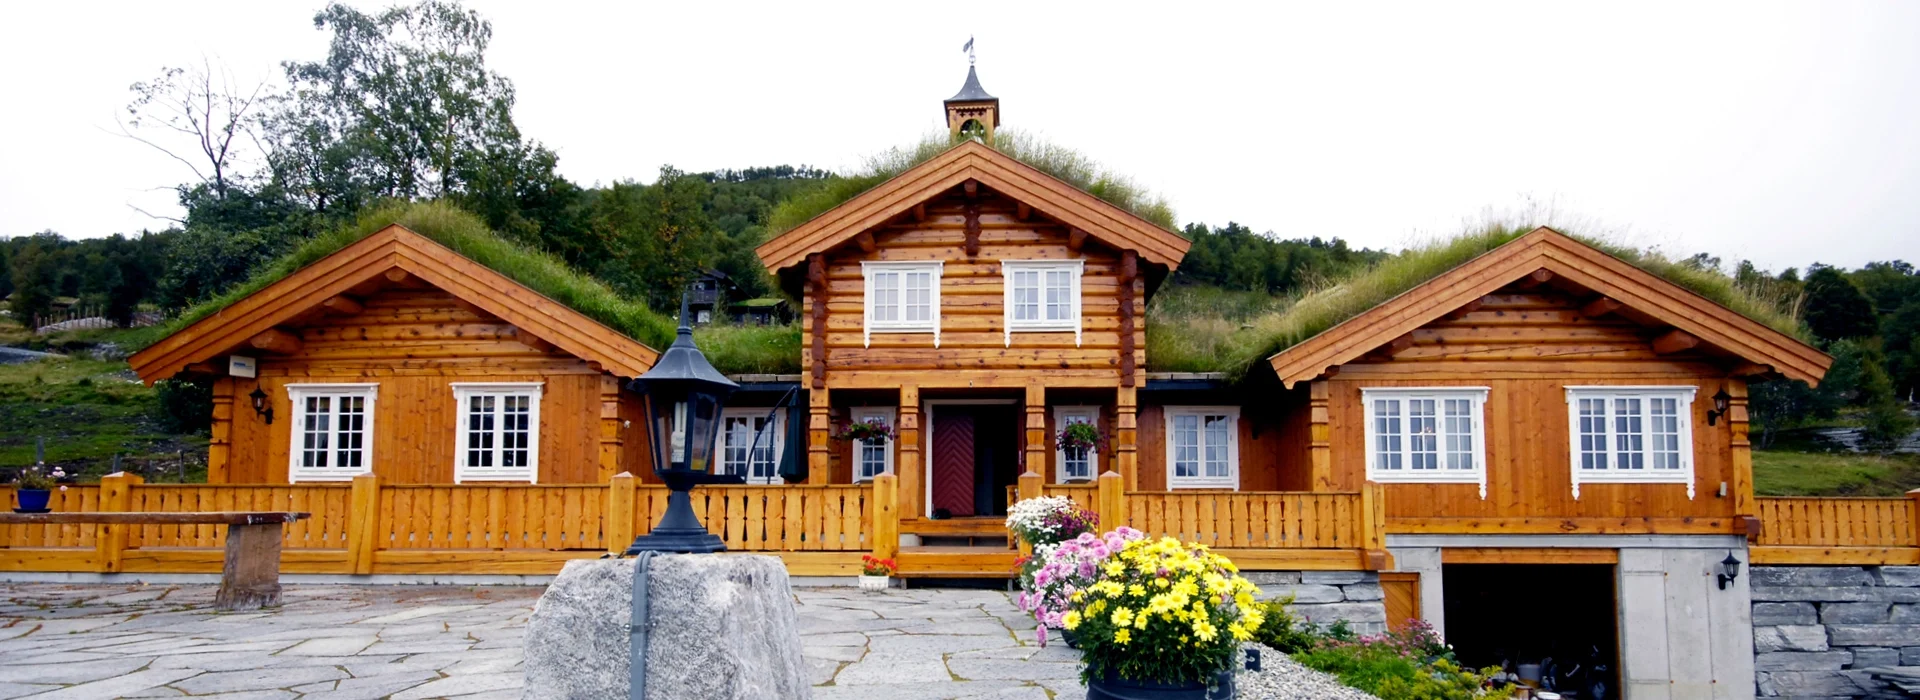 Nøkkelferdig hytte fra Lundhytta. Bilde.